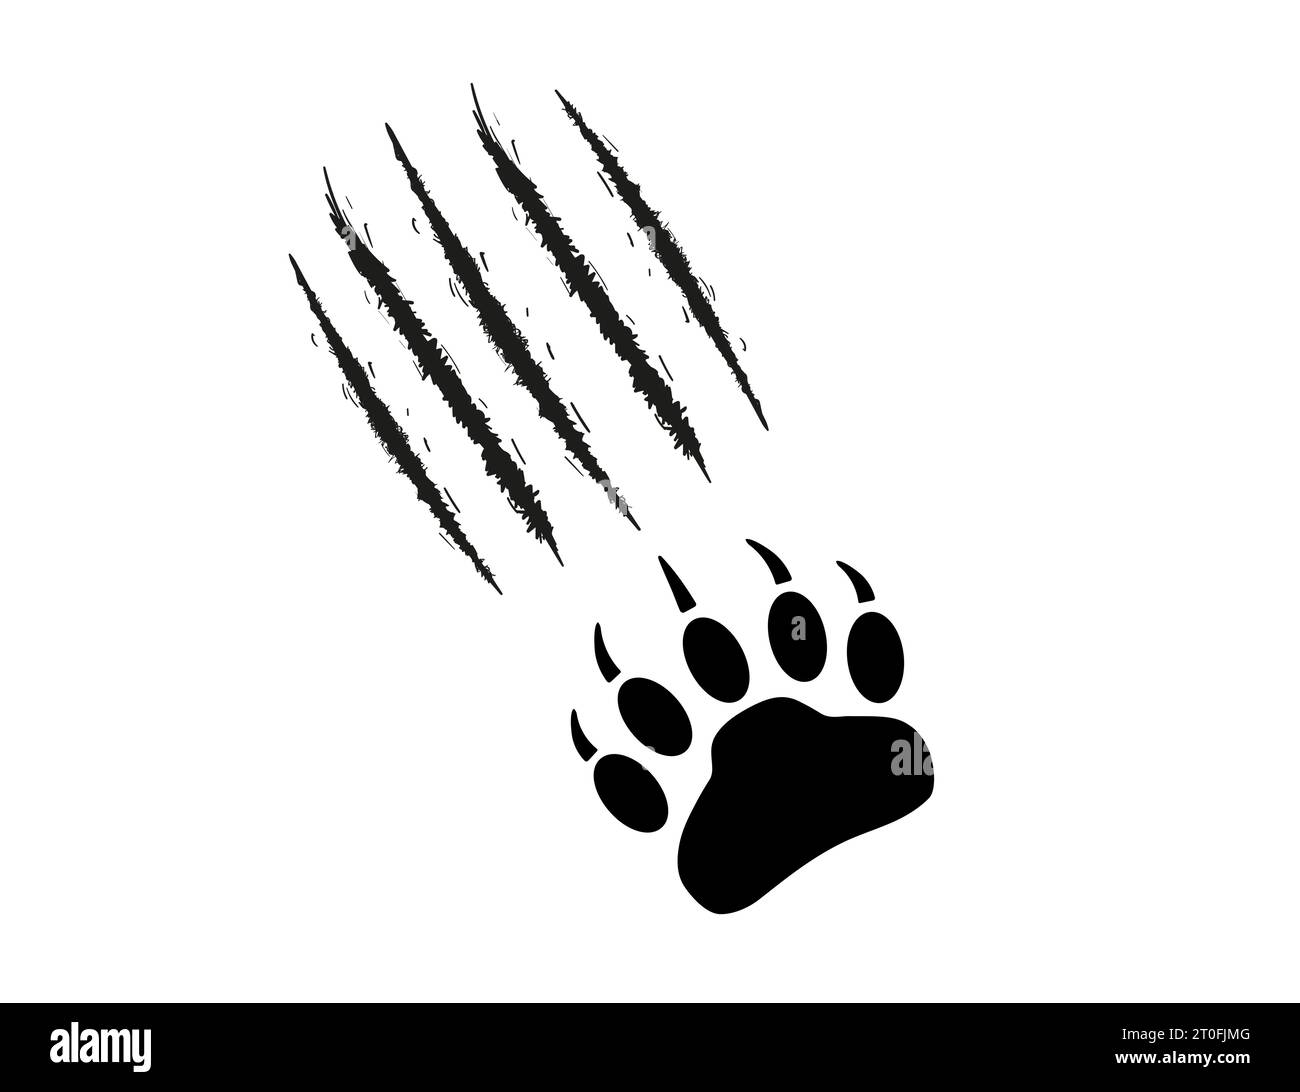 Bär- oder Grizzly-Paw-Aufdruck mit Kratzern. Klauenspuren, Schnitte, Wunden. Schwarze Silhouette auf weißem Hintergrund. Monster, Raubtier. Wildtierpfote mit Klaue Stock Vektor